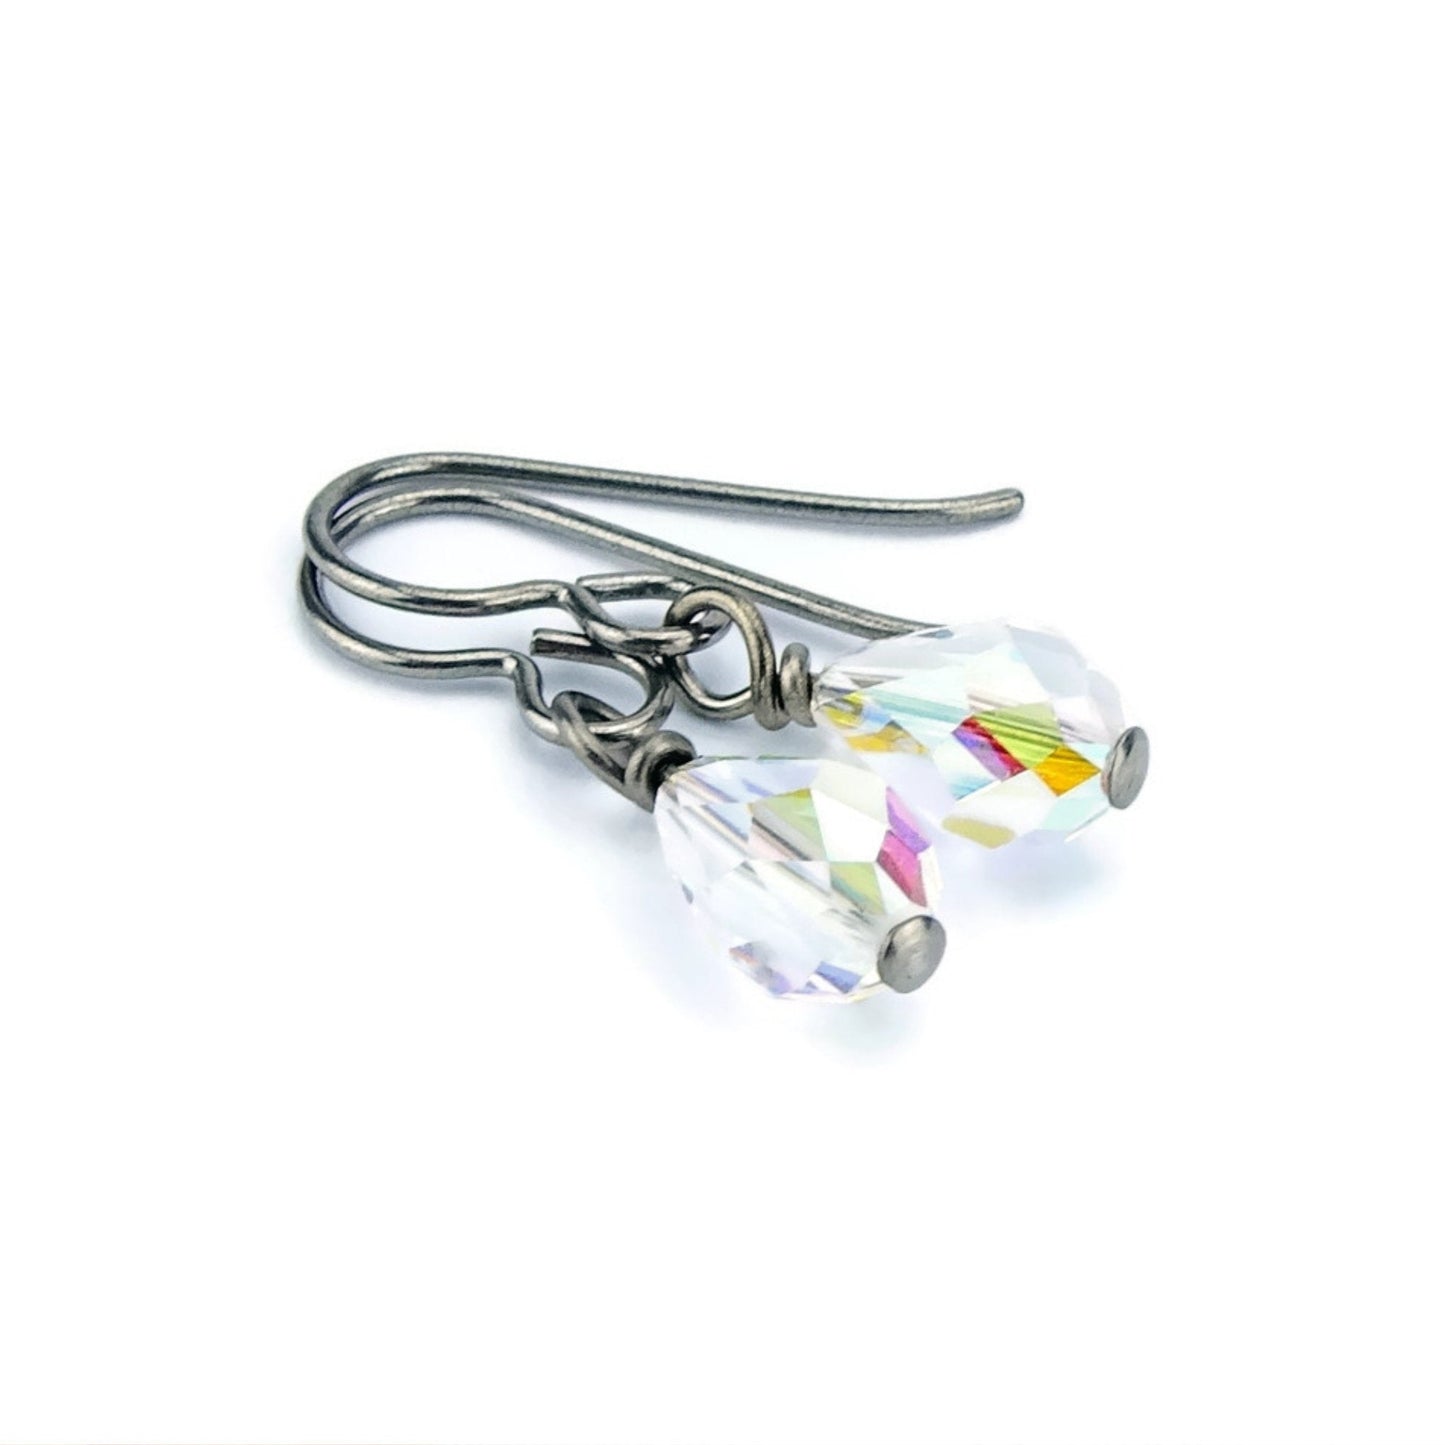 Niobium Earrings Crystal Aurora Borealis Hypo Allergenic Titanium Earrings, Swarovski Crystal Teardrop No Nickel Earrings for Sensitive Ears